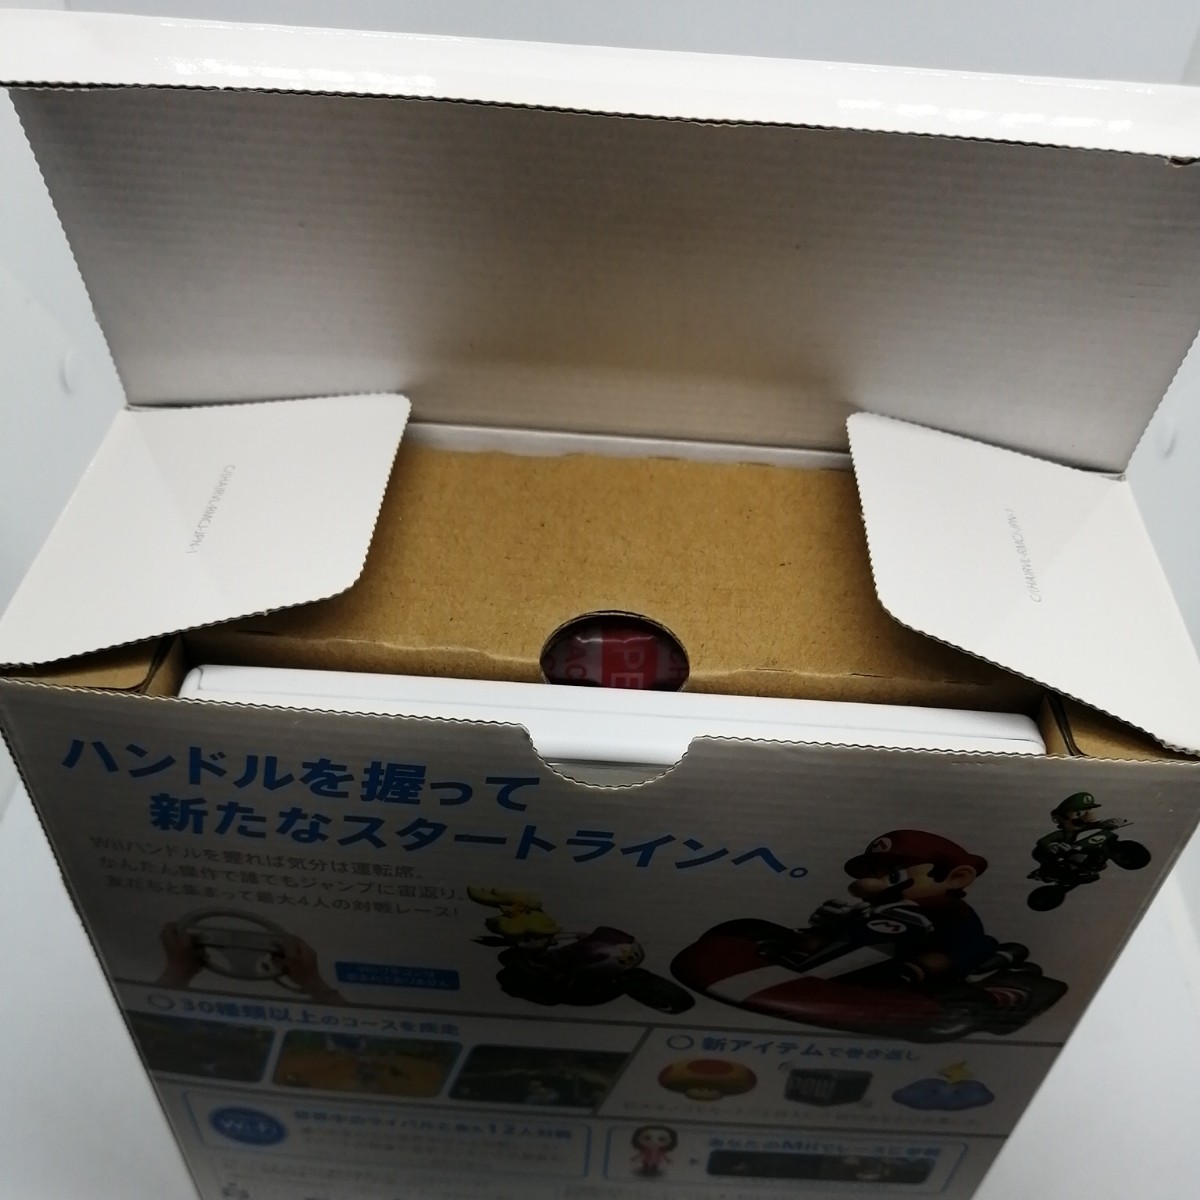 【箱新品】Wii マリオカートWii 同梱版 Wiiハンドル ソフト 美品  マリオカート 